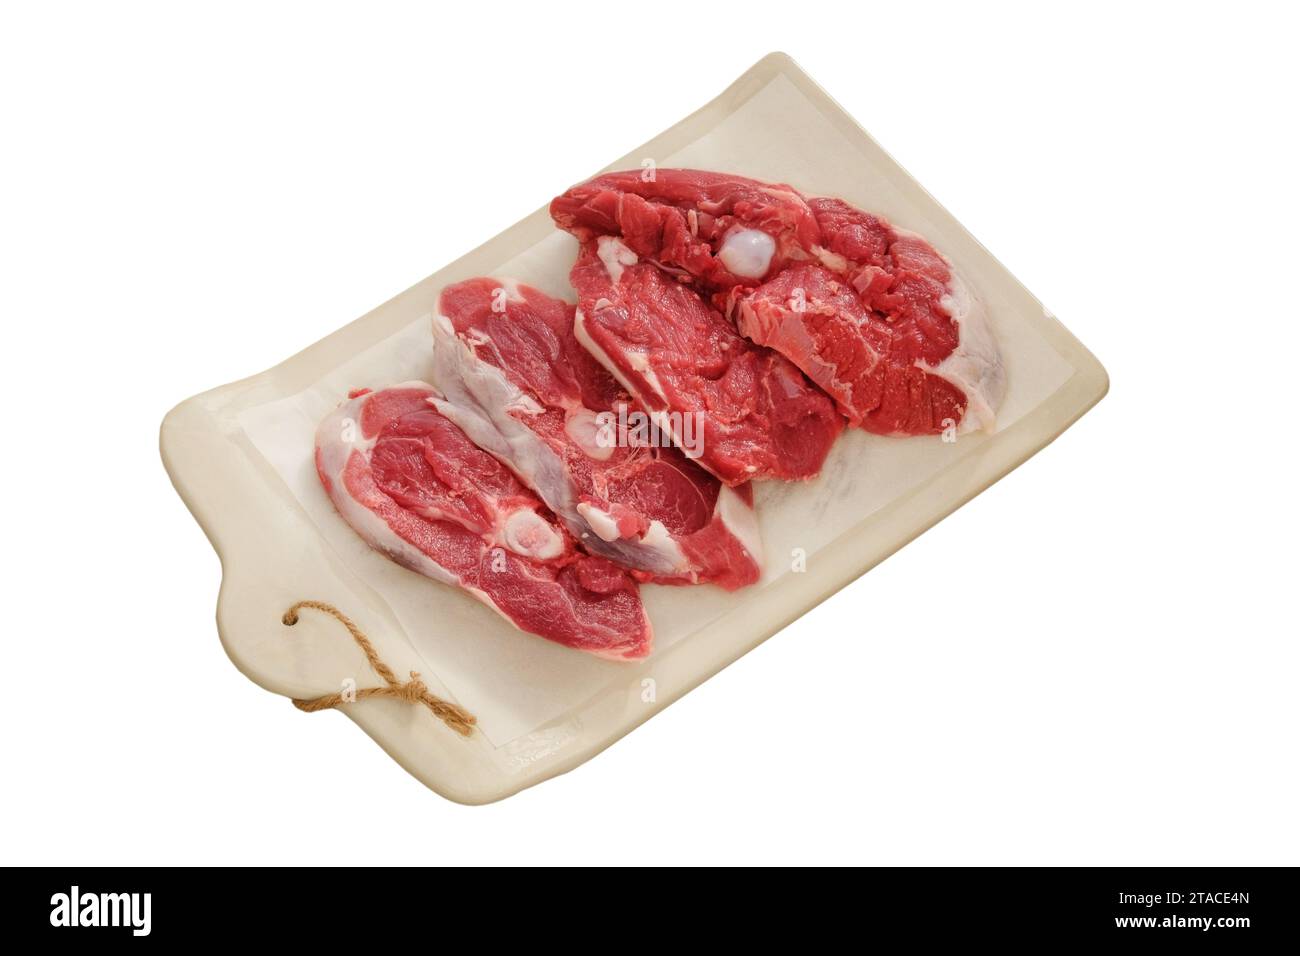 Lammfleisch auf einem Keramikbrett isoliert auf weißem Hintergrund. Fleischstücke zum Kochen. Hinterer Teil des Schlachtkörpers. Stockfoto